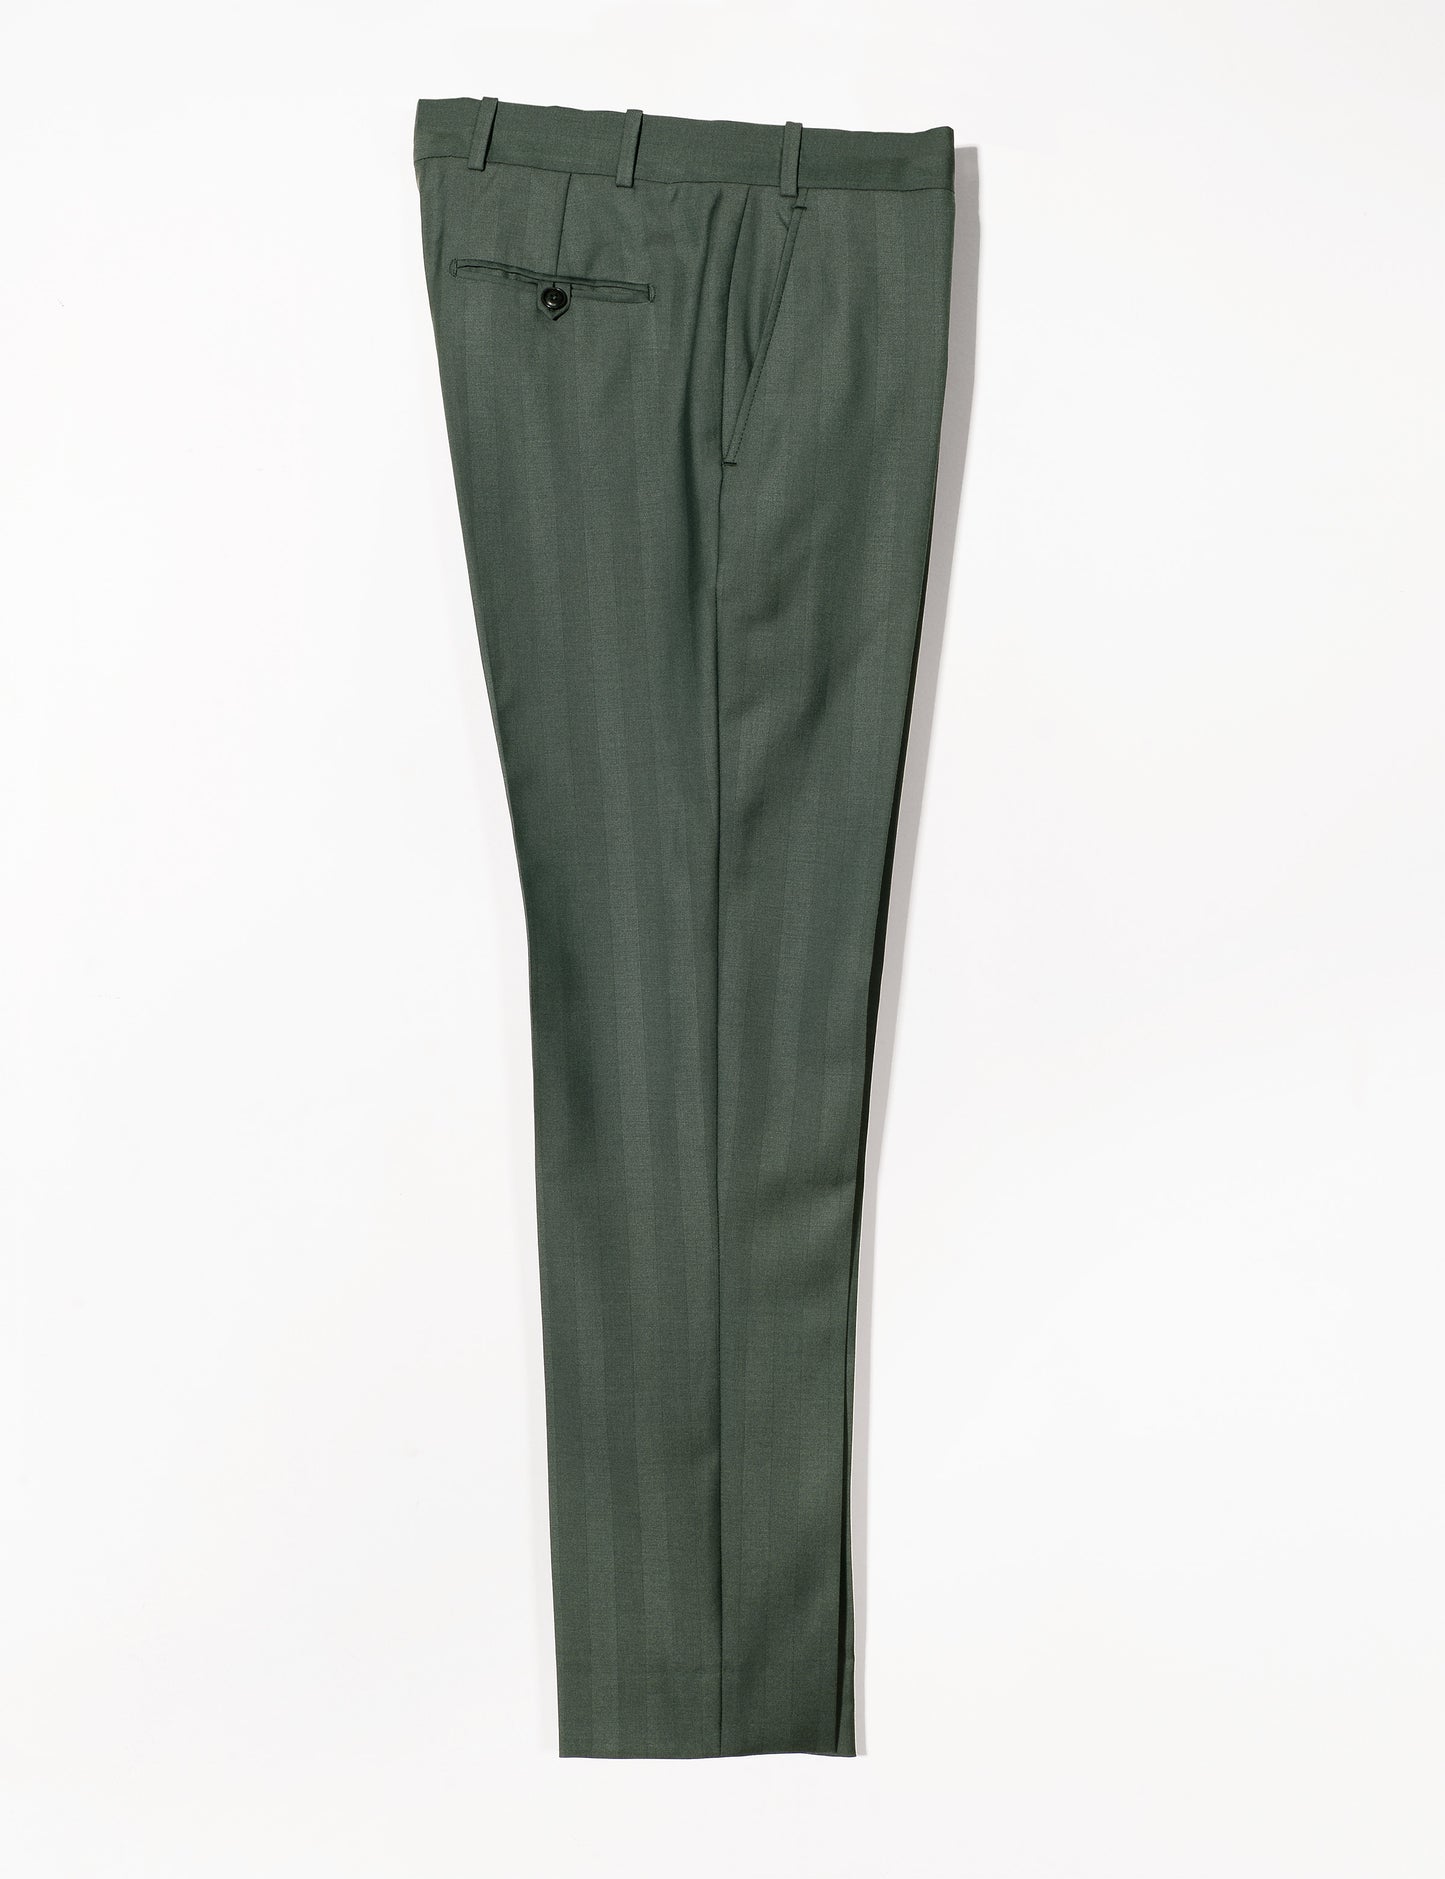 BKT50 Tailored Trousers in Wool Herringbone - Cyprus